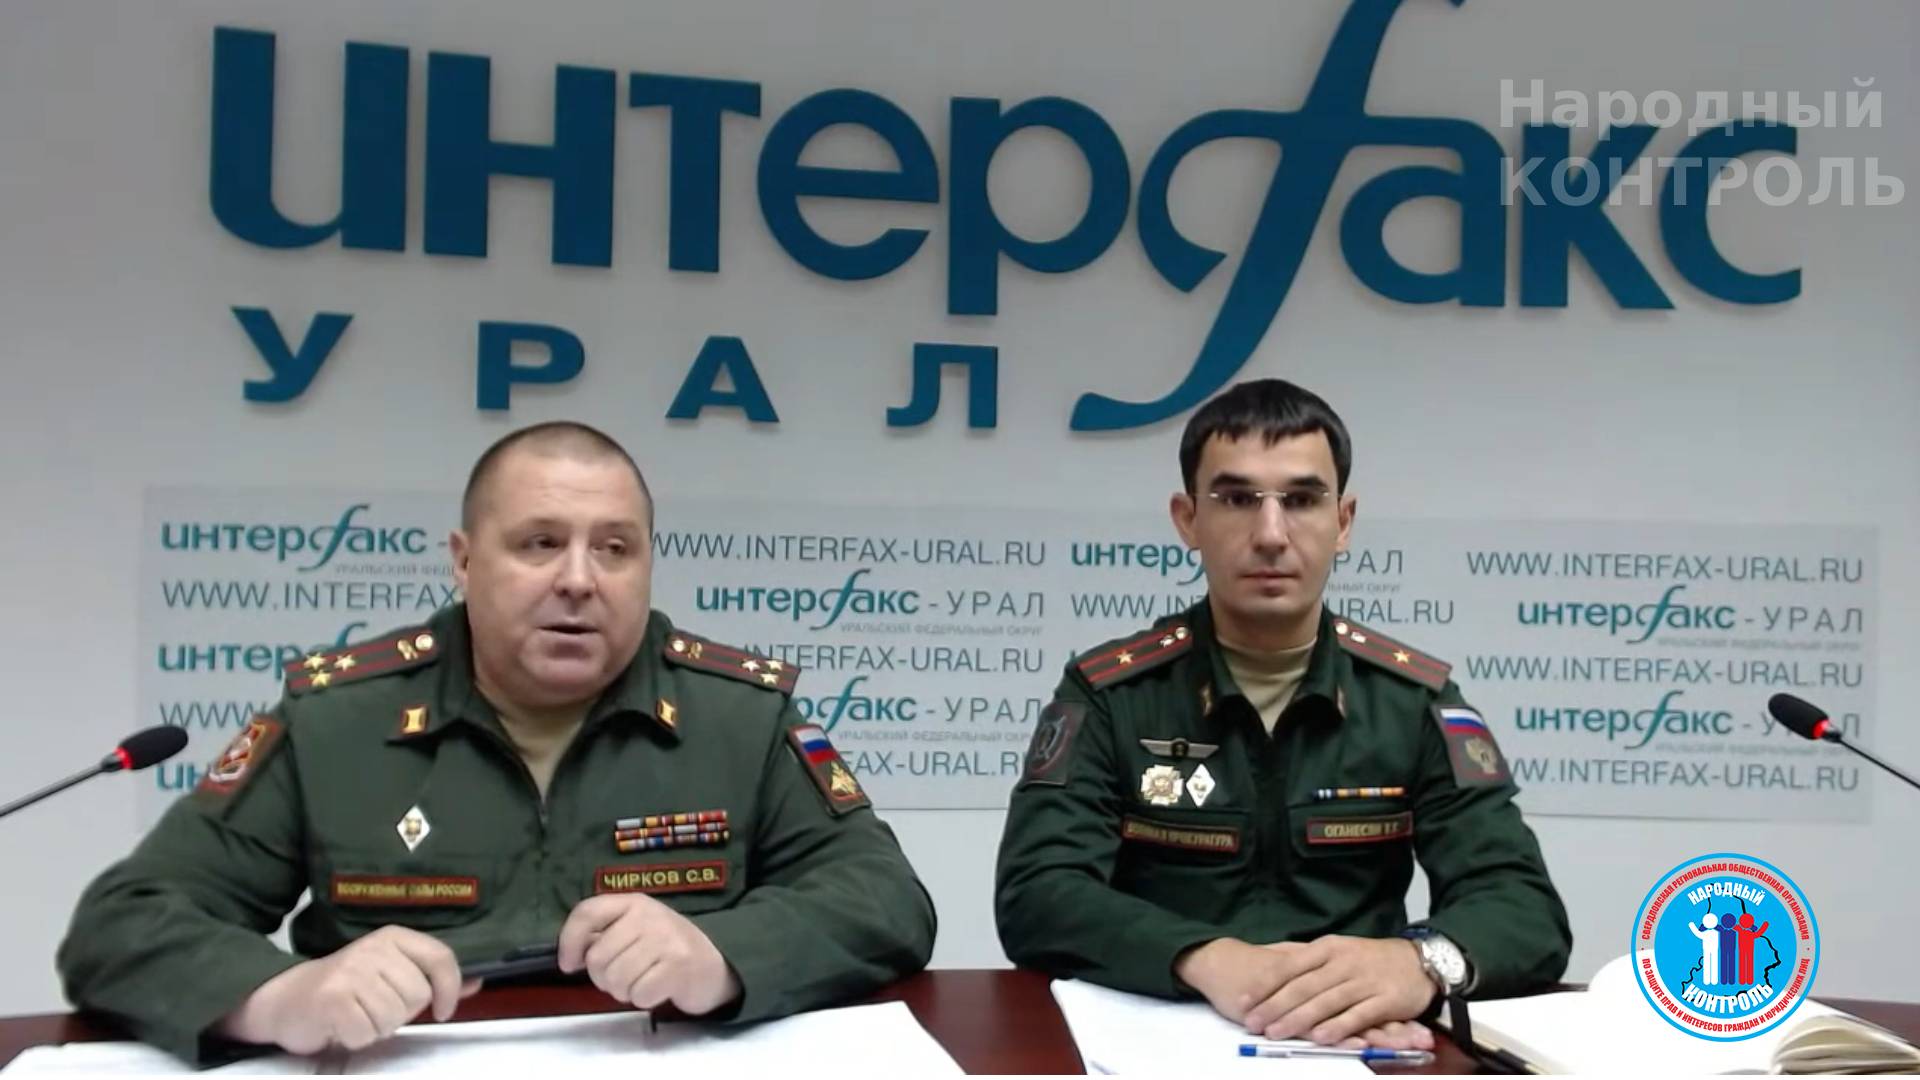 Пресс-конференция “Частичная мобилизация в Свердловской области”